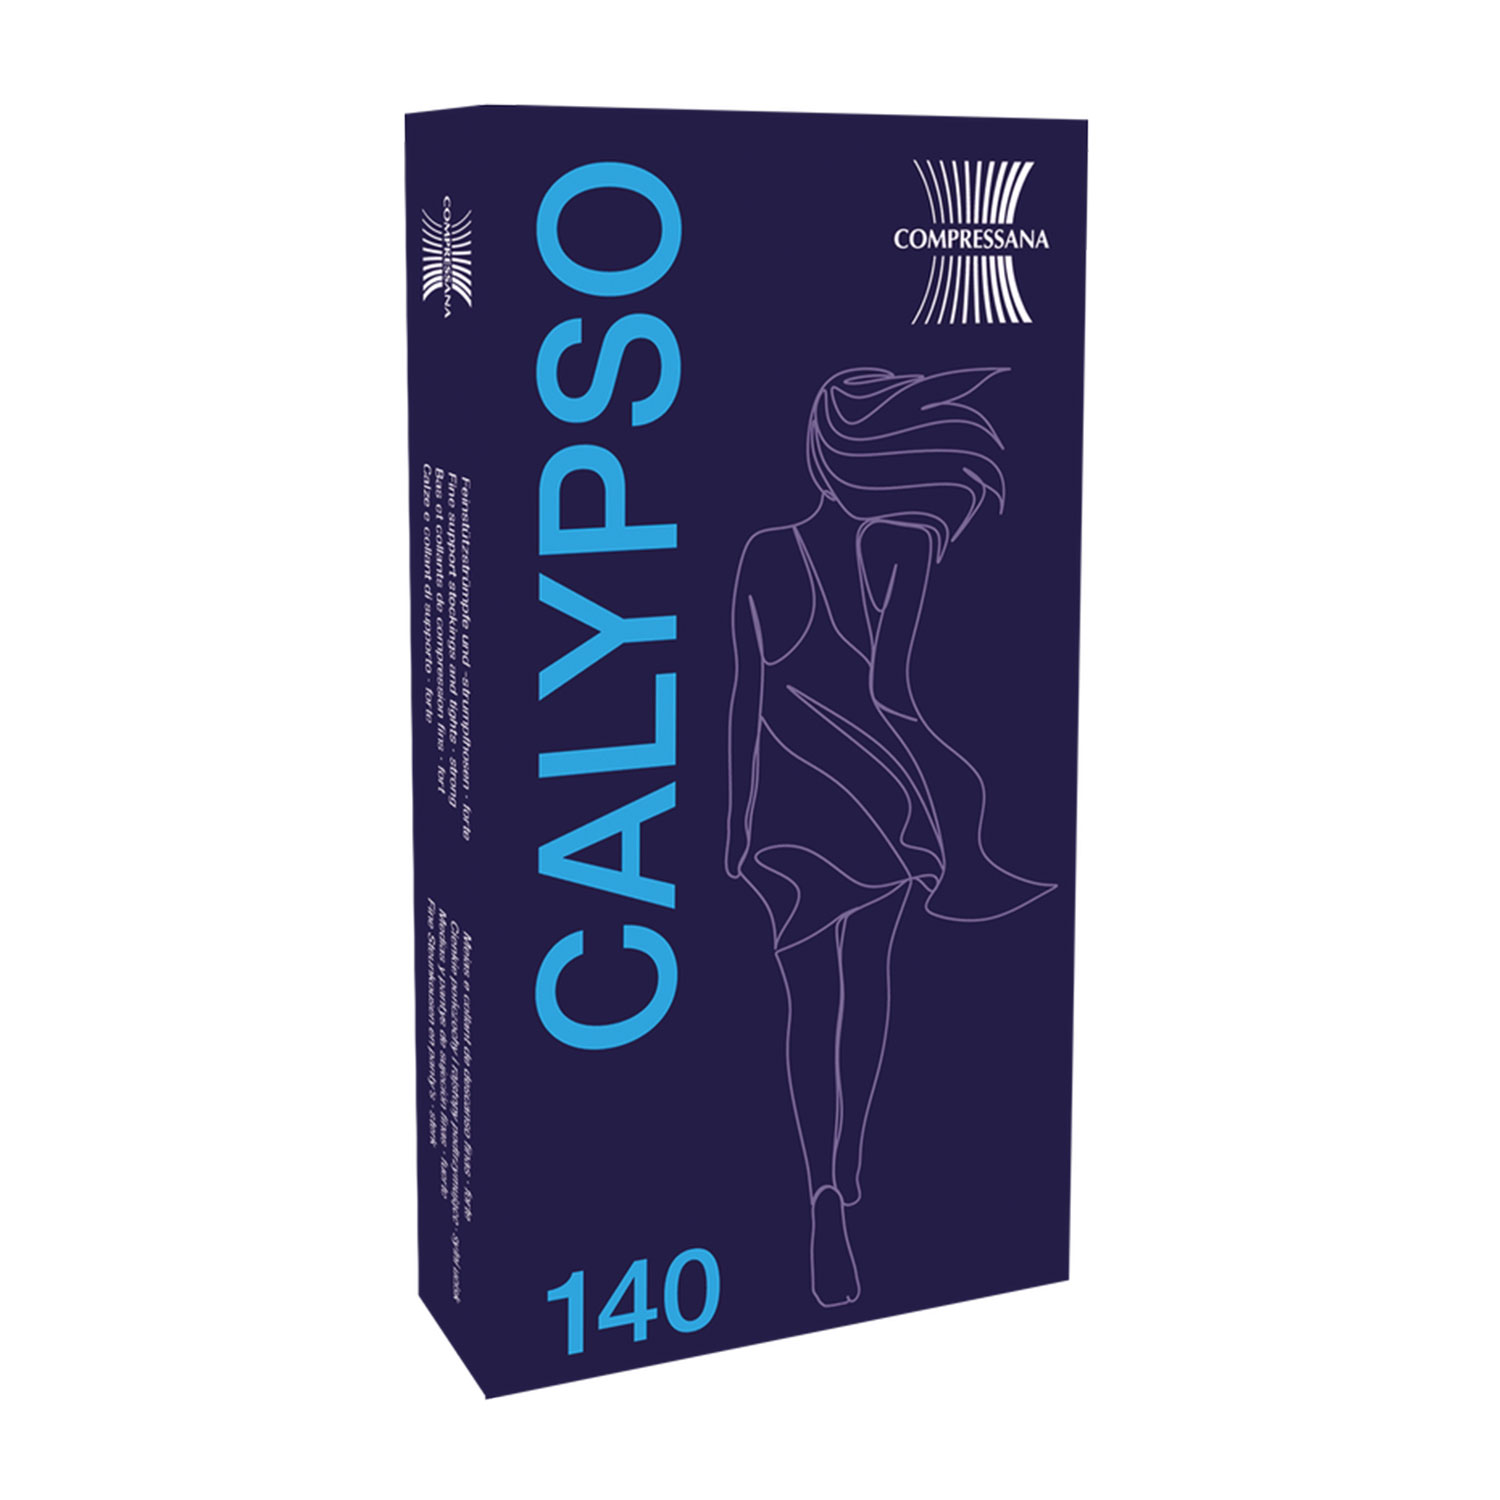 Kniestrümpfe - Fit für die Reise Calypso 140 den Compressana 9015 III (M) nachtblau